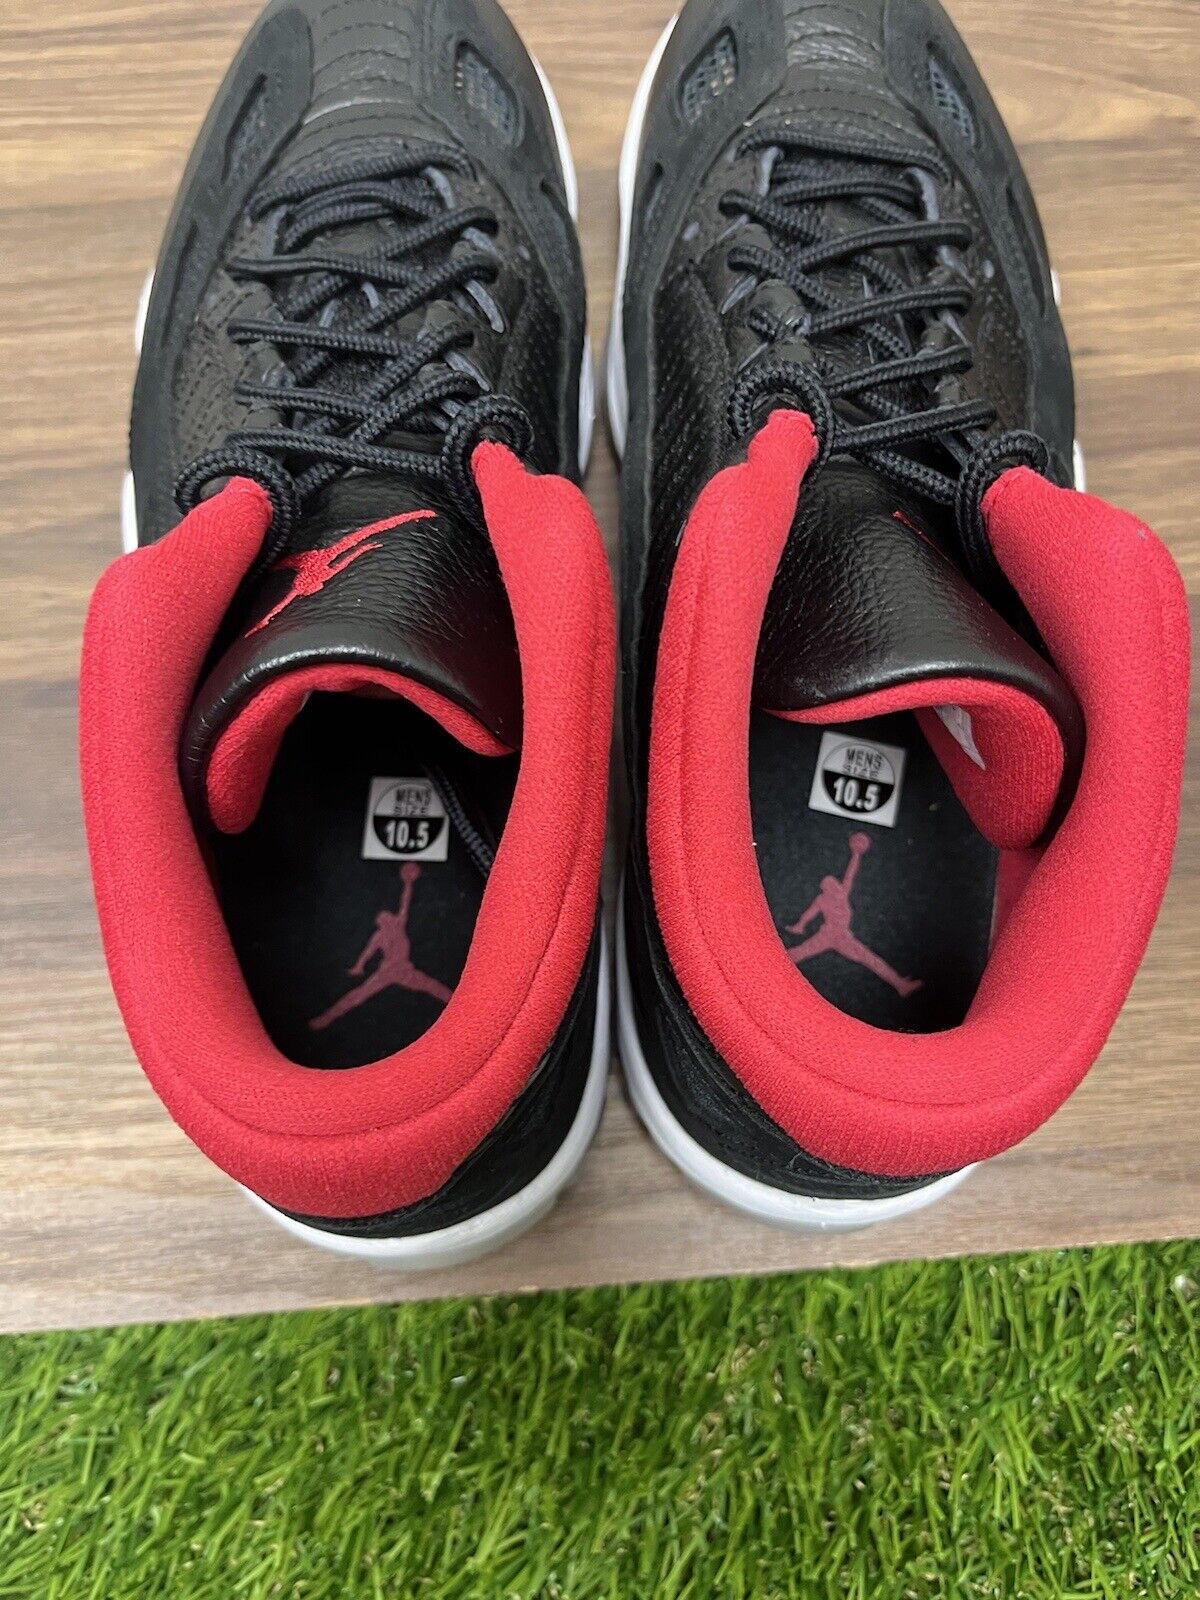 Air Jordan 11 Retro Low IE Bred Black Red 919712-023 Men Size 10.5